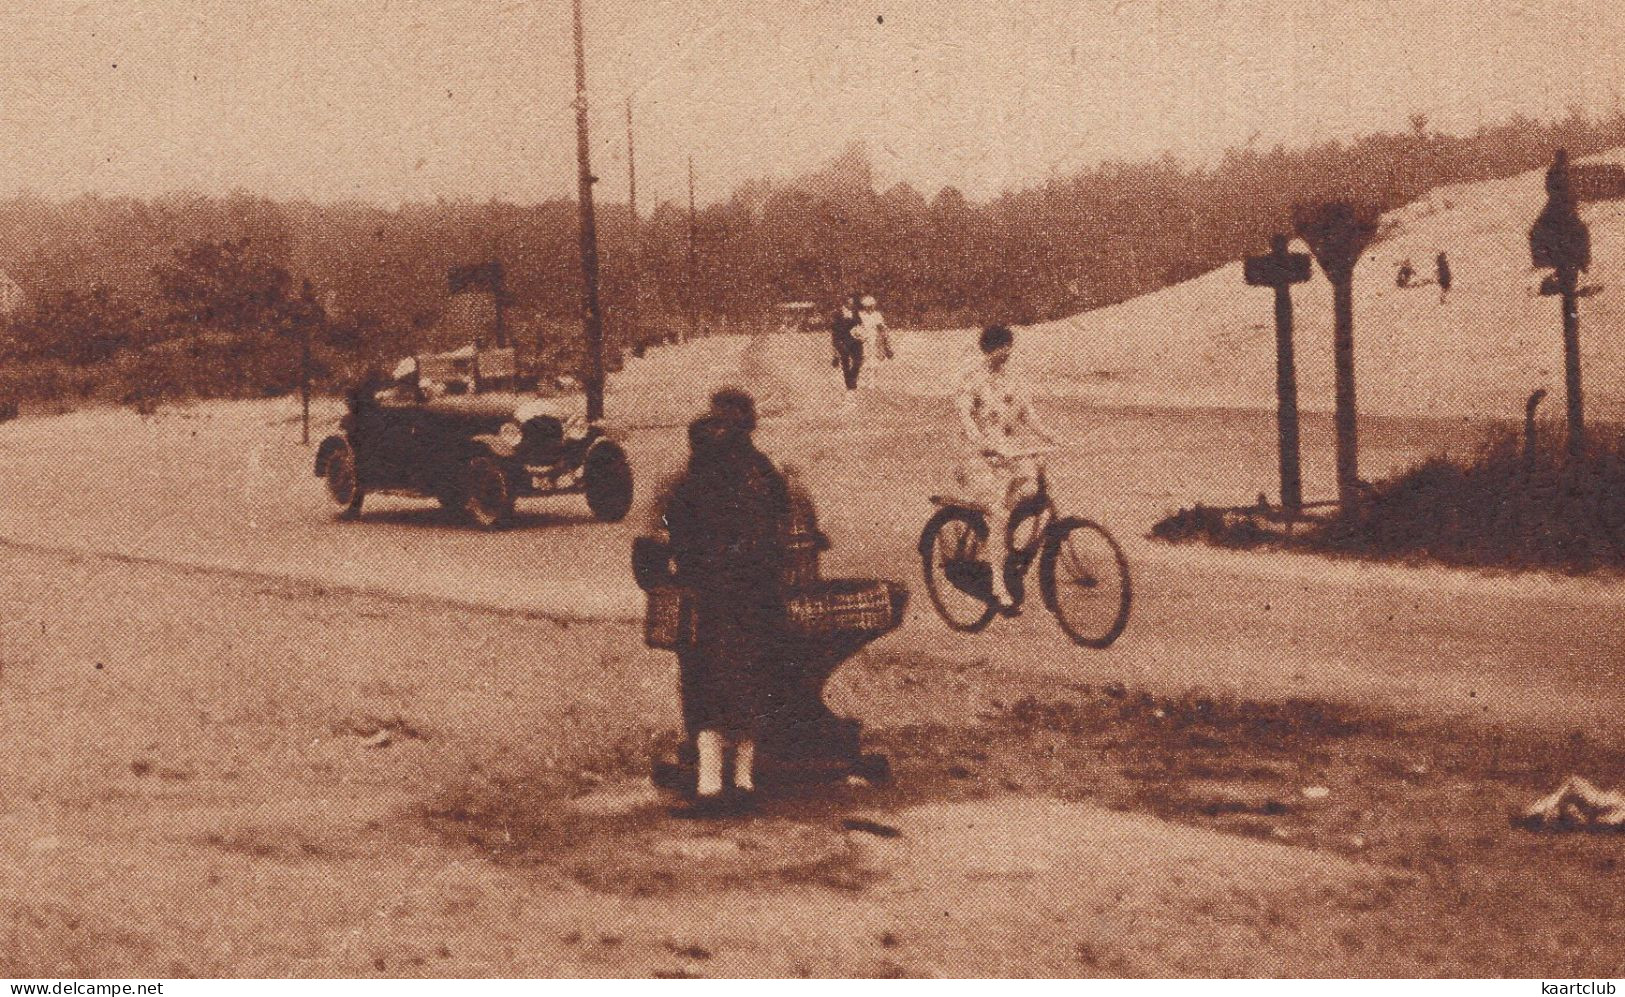 Overveen: OLDTIMER AUTO / CAR CABRIOLET 1910-1920, FIETSTER / BICYCLISTE - Op De Nieuwen Zeeweg - (Holland) - PKW